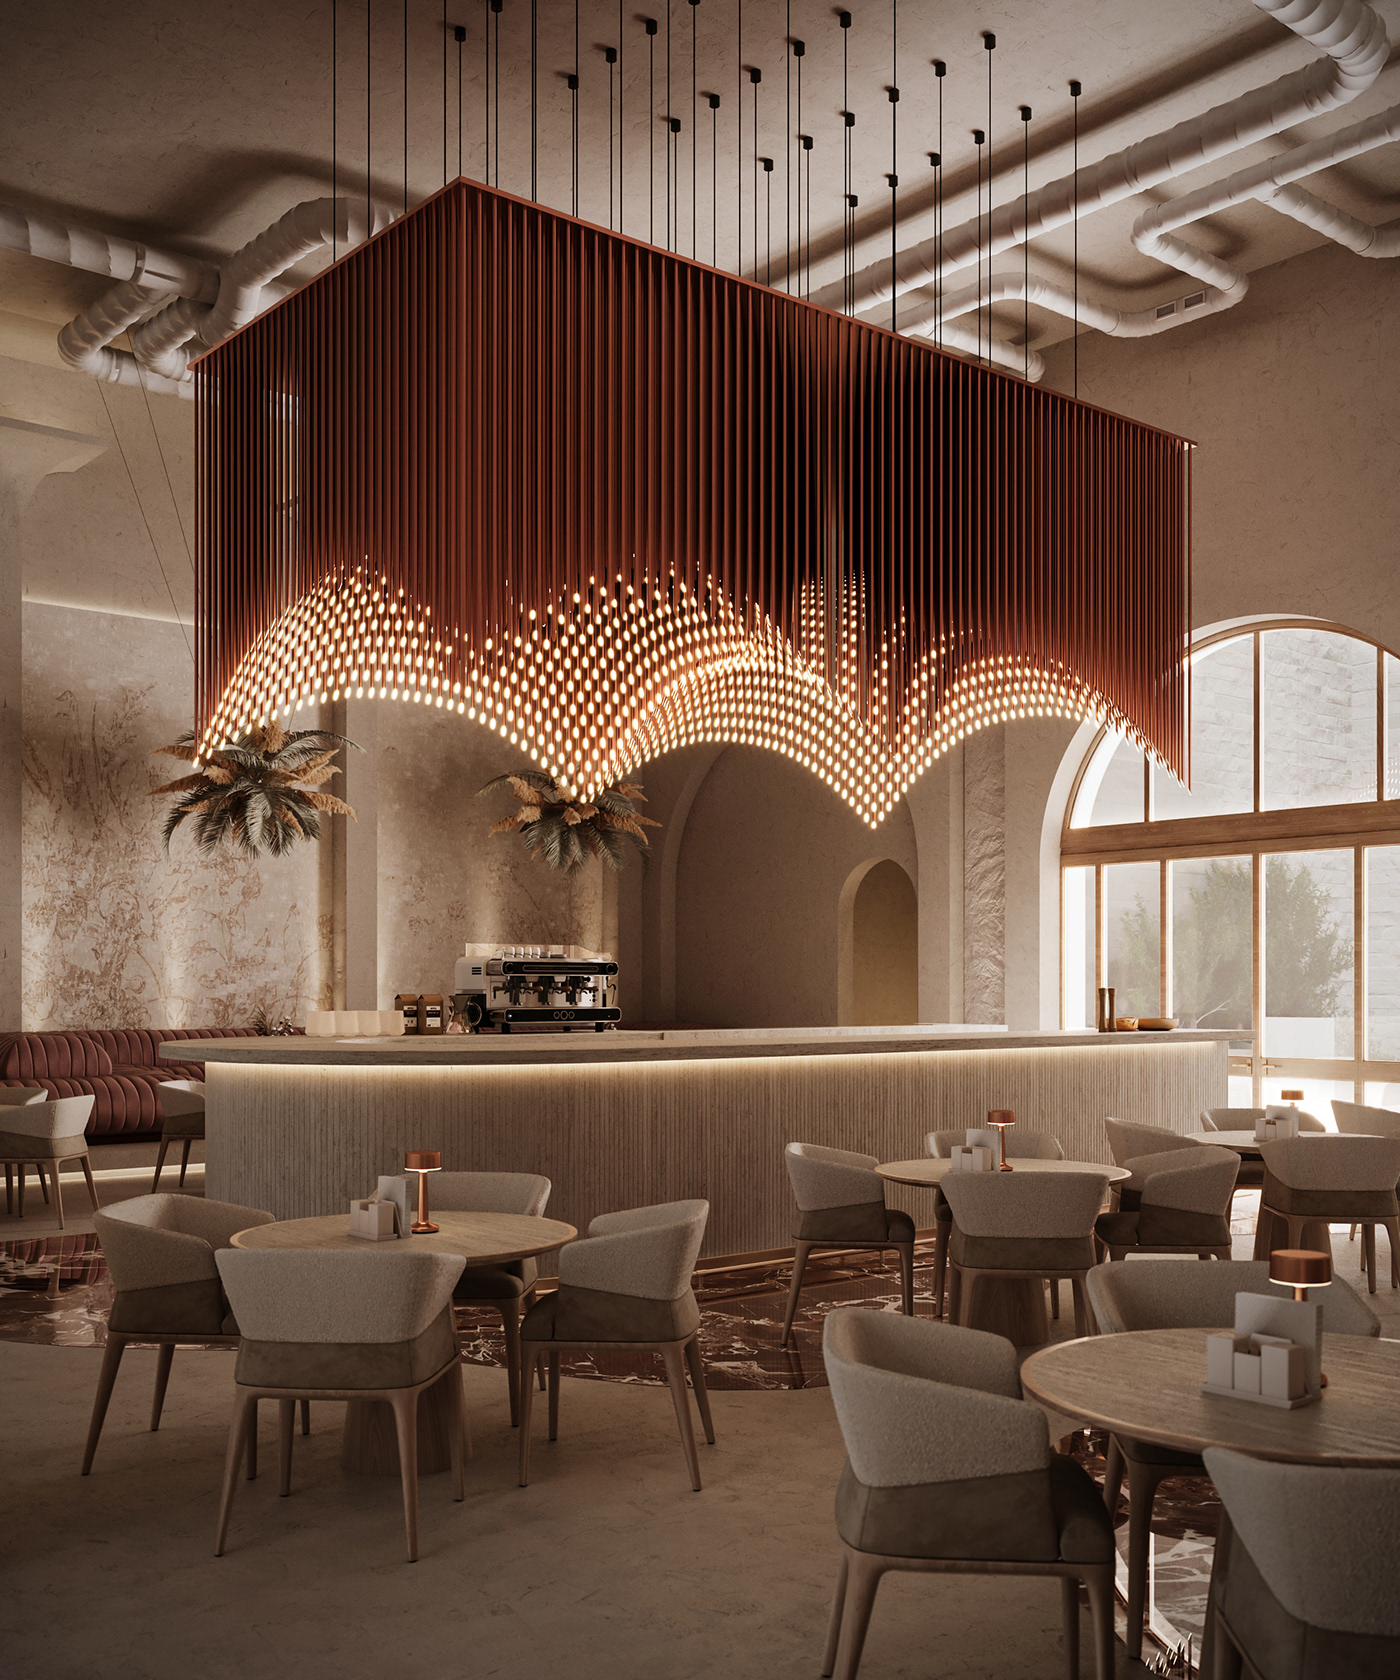 cafe restaurant modern Interior design architecture interior design  visualization Render 3D